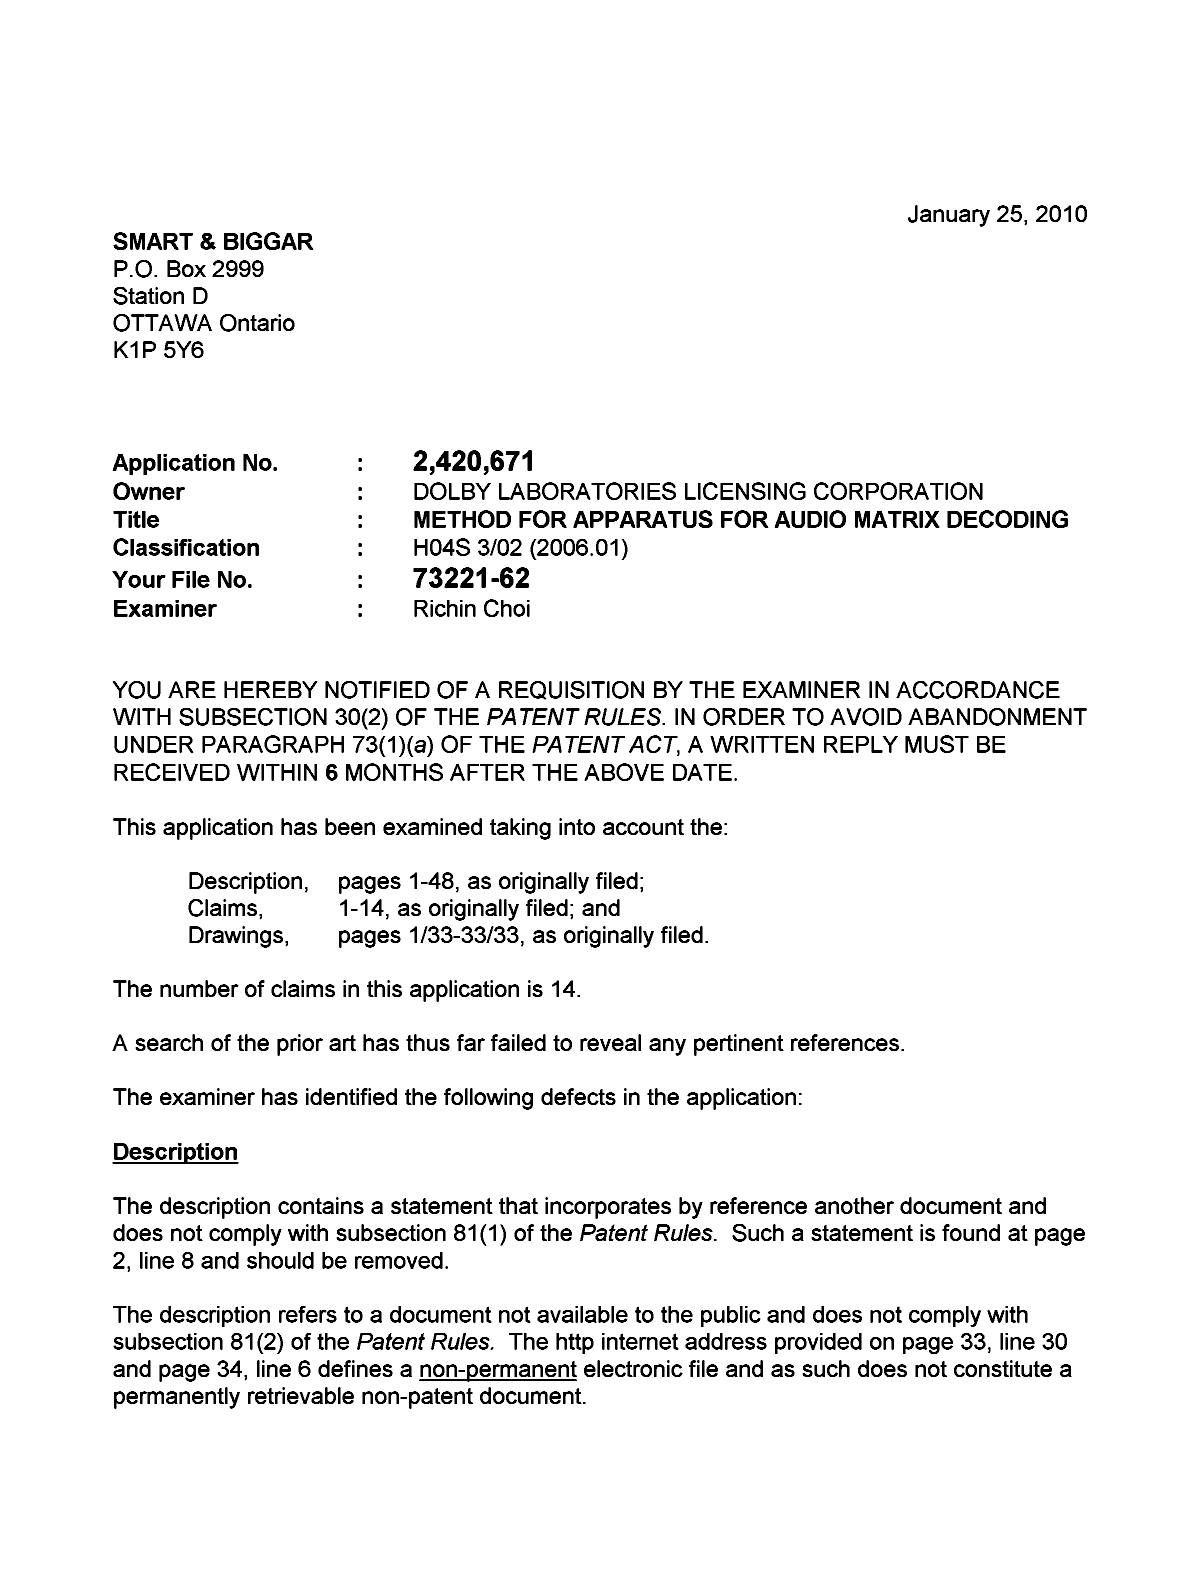 Document de brevet canadien 2420671. Poursuite-Amendment 20100125. Image 1 de 2